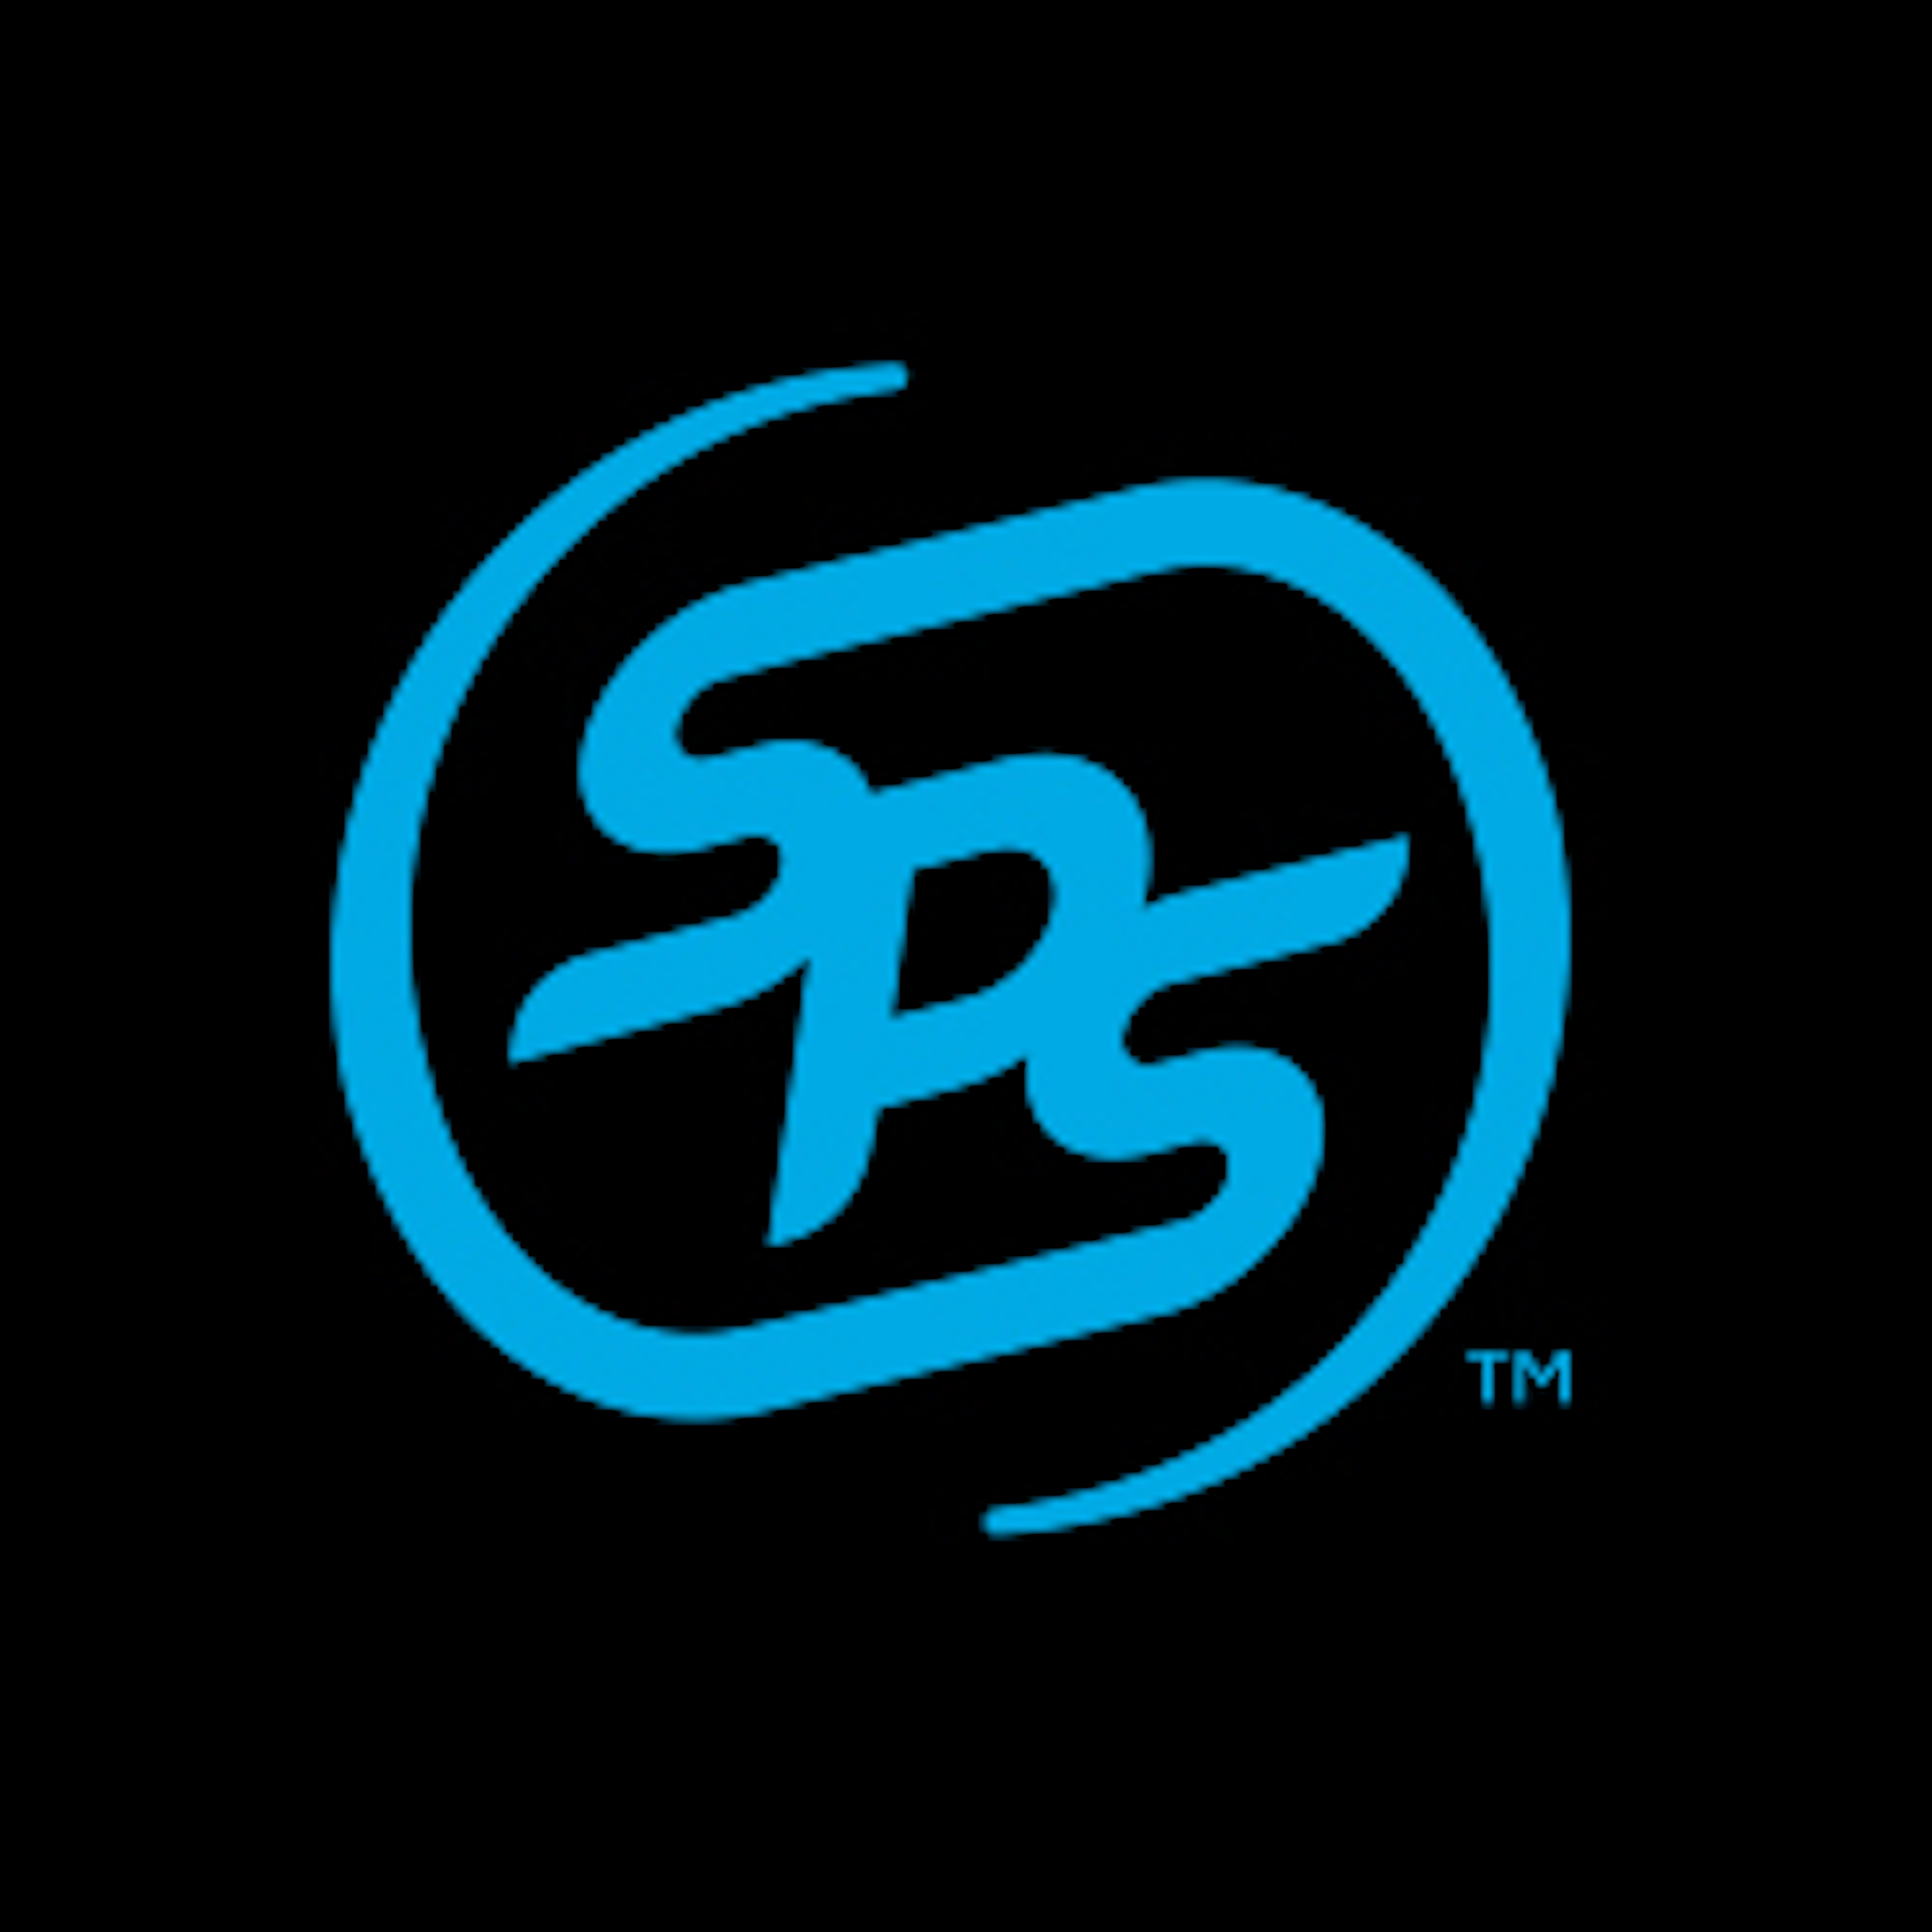 SPS Commerce Logo